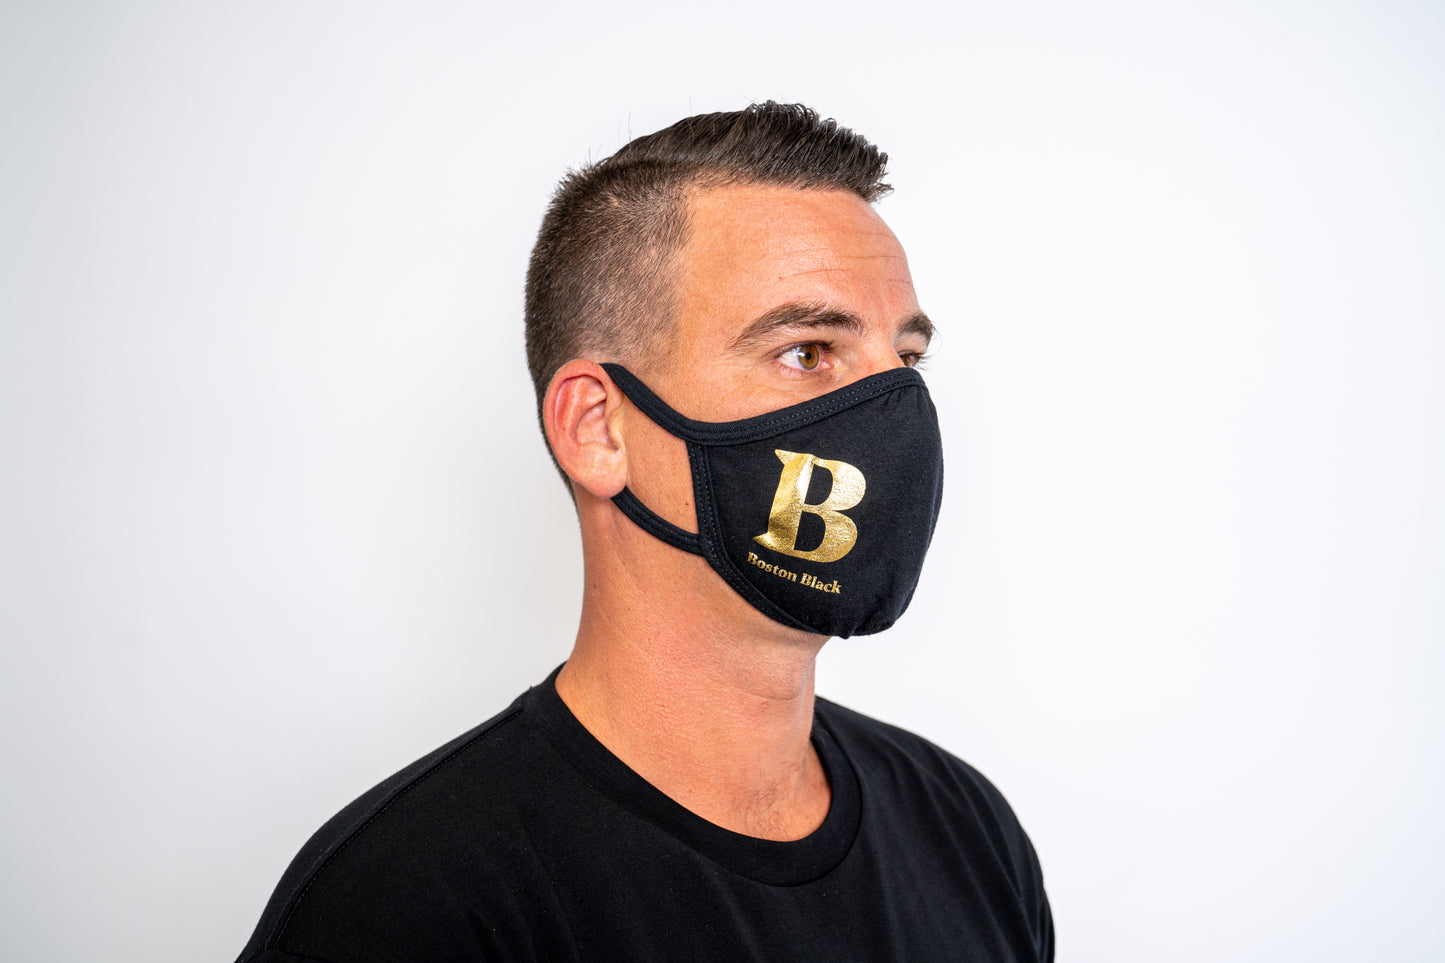 Boston Black Branded Mask